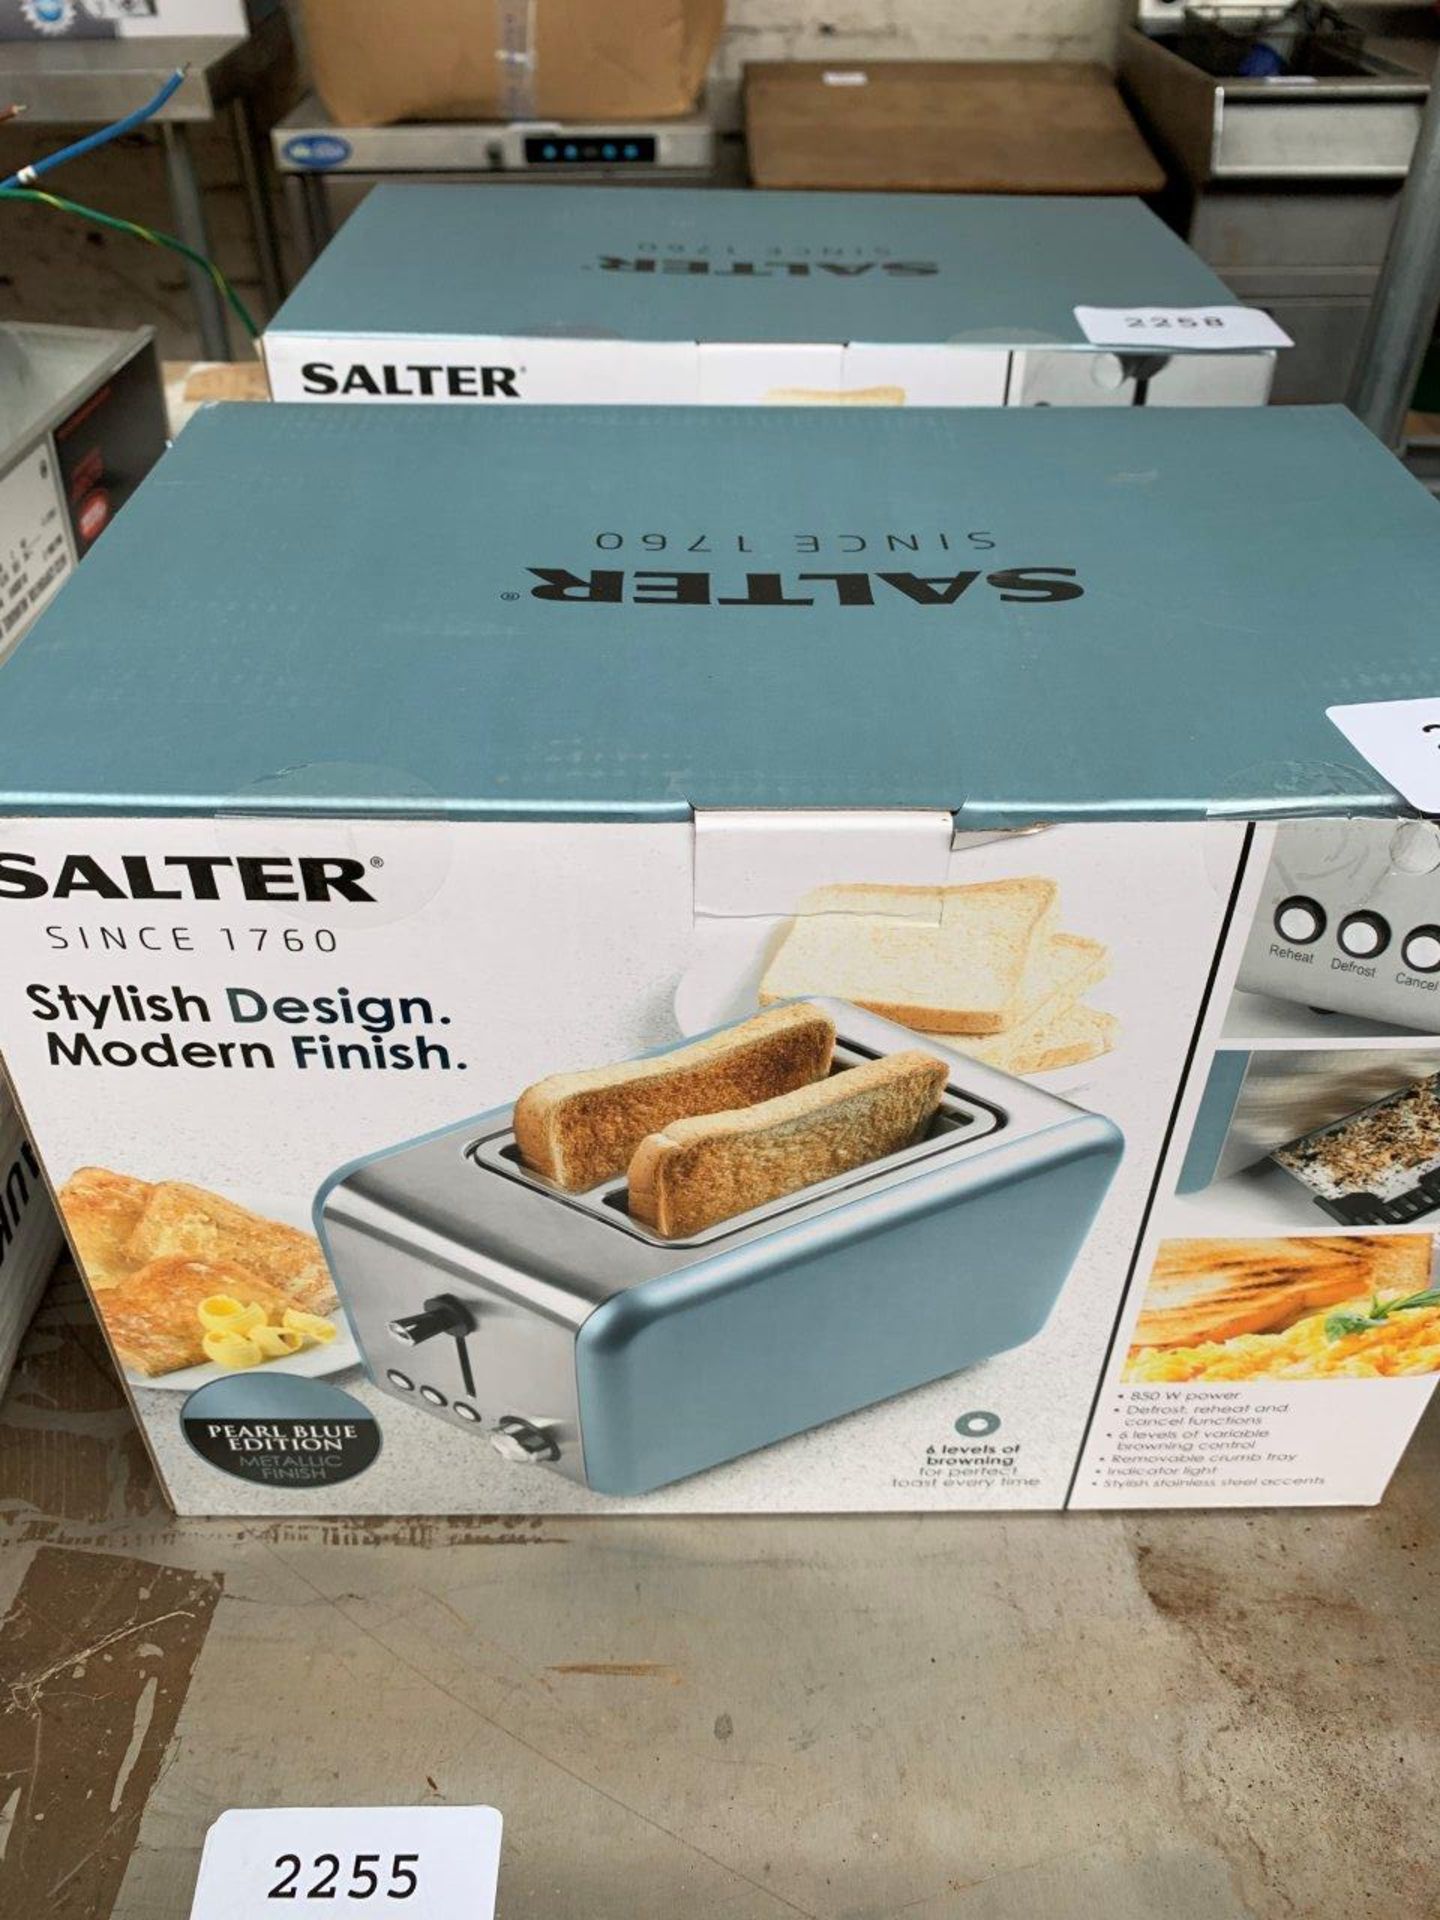 Salter 2 slice toaster.